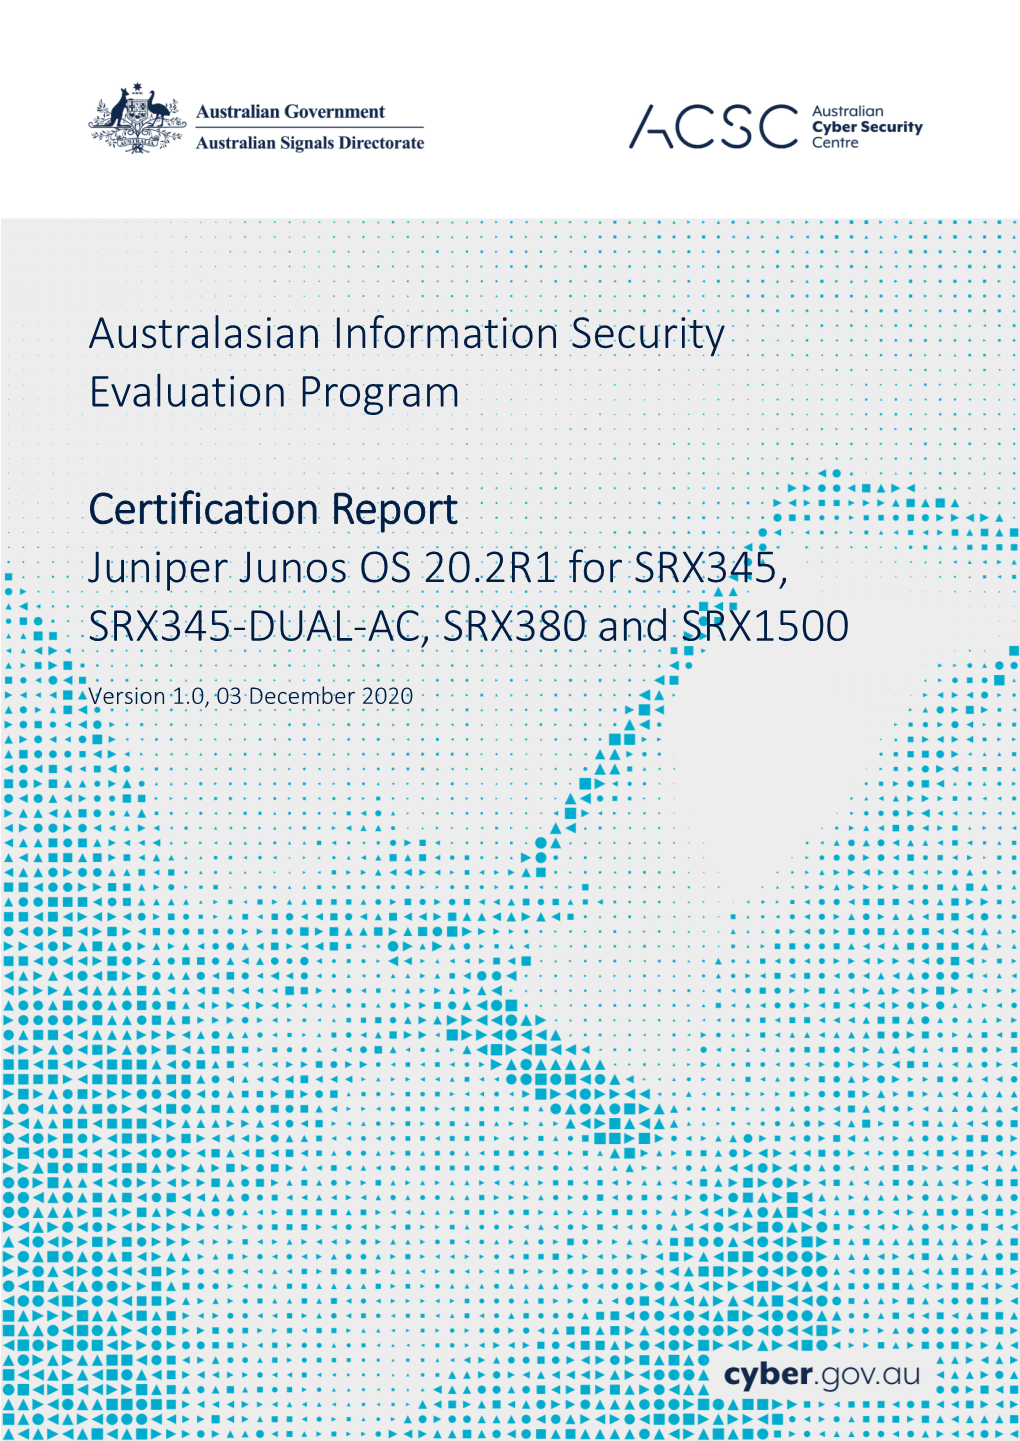 Certification Report Juniper Junos OS 20.2R1 for SRX345, SRX345-DUAL-AC, SRX380 and SRX1500